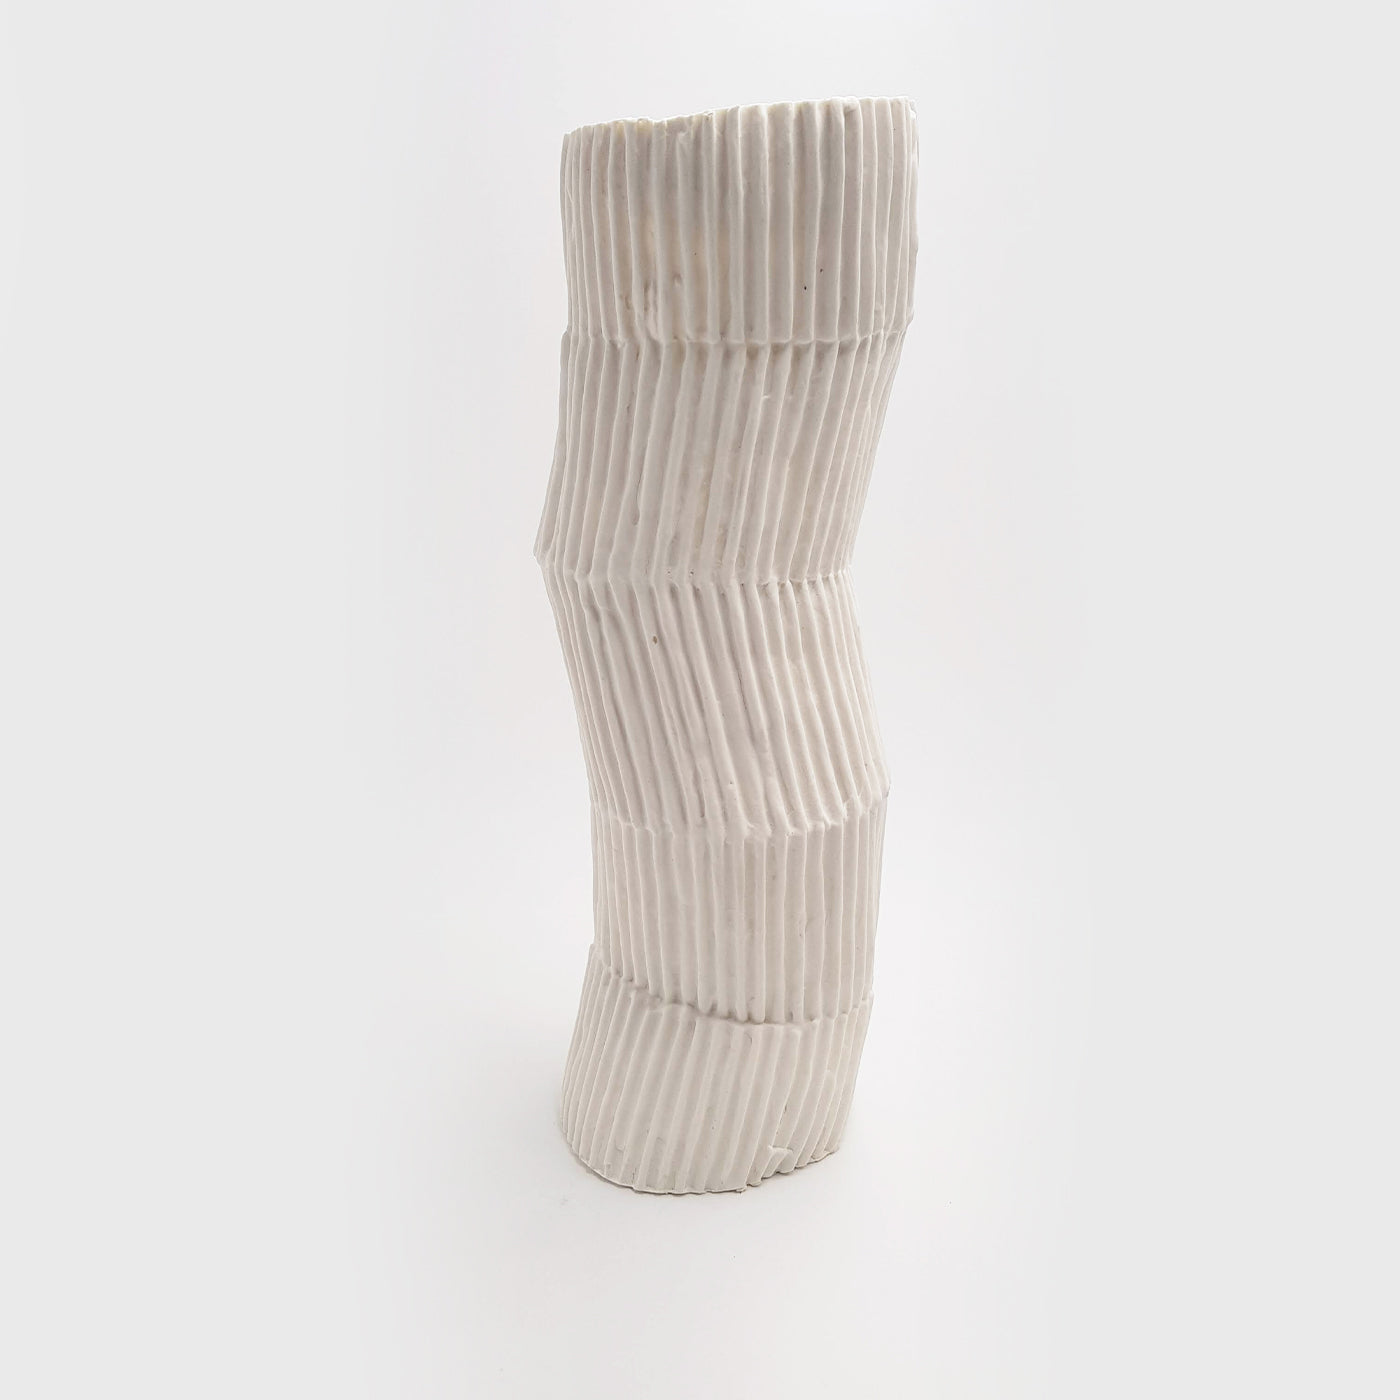 Le Torrette Weiße Pappmaché-Vase von Nino Basso #1 - Alternative Ansicht 2